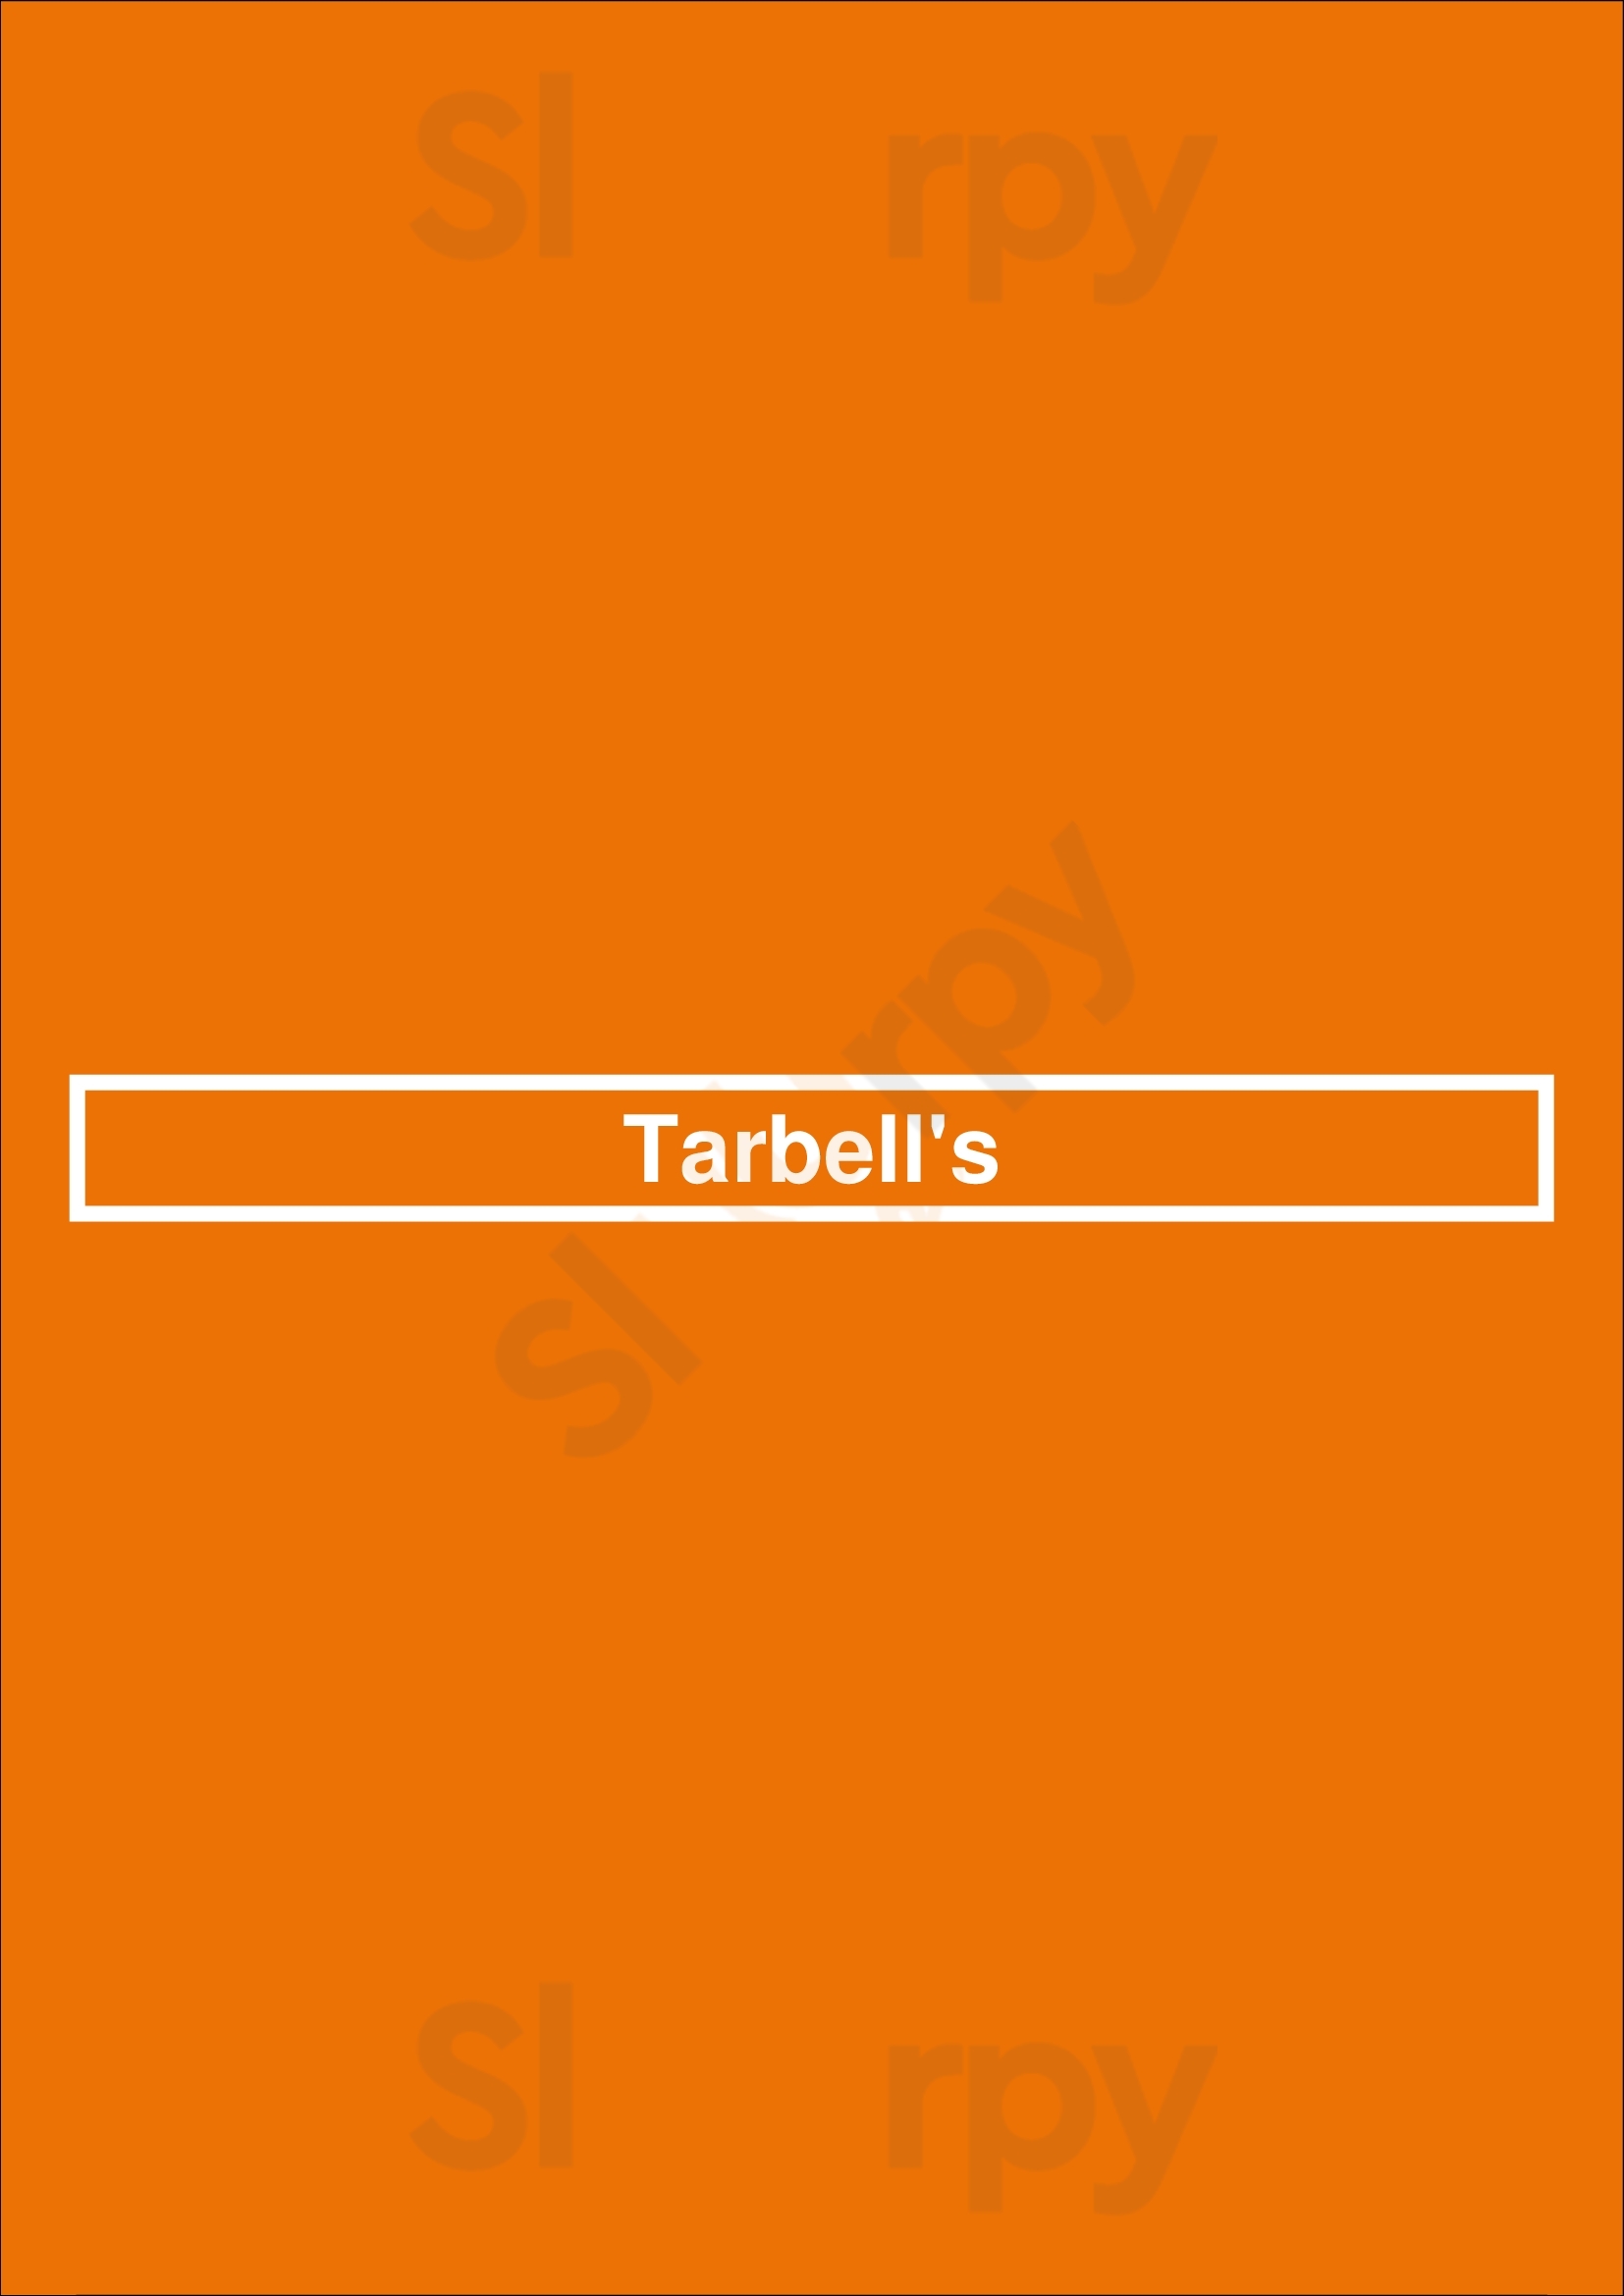 Tarbell's Phoenix Menu - 1